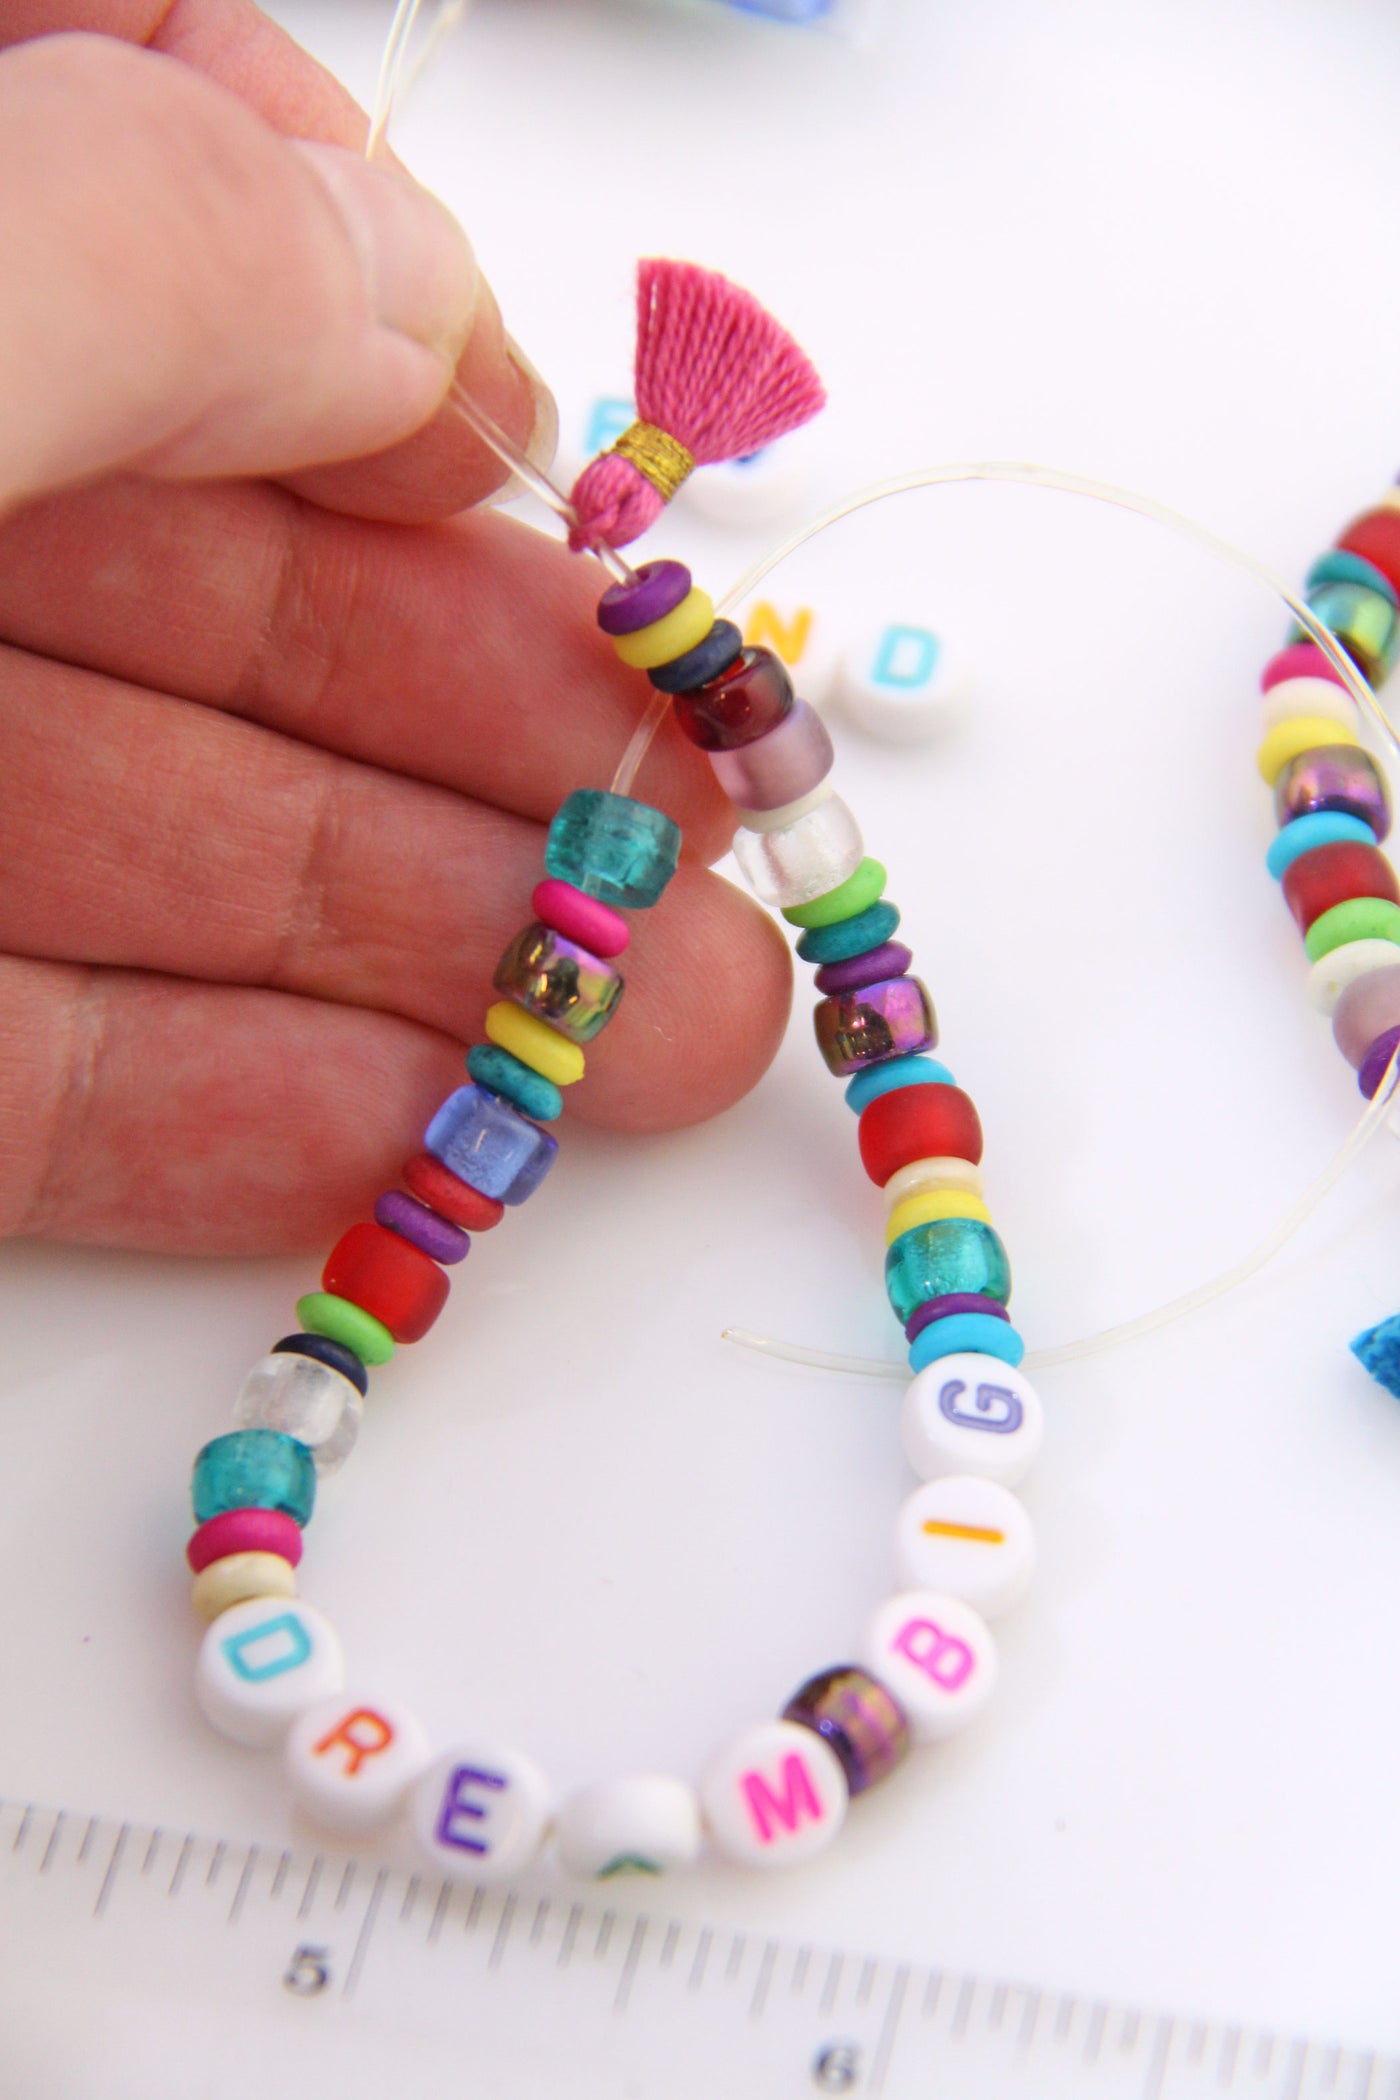 Friendship bracelet kit for kids, rainbow bracelet kit, craft kit